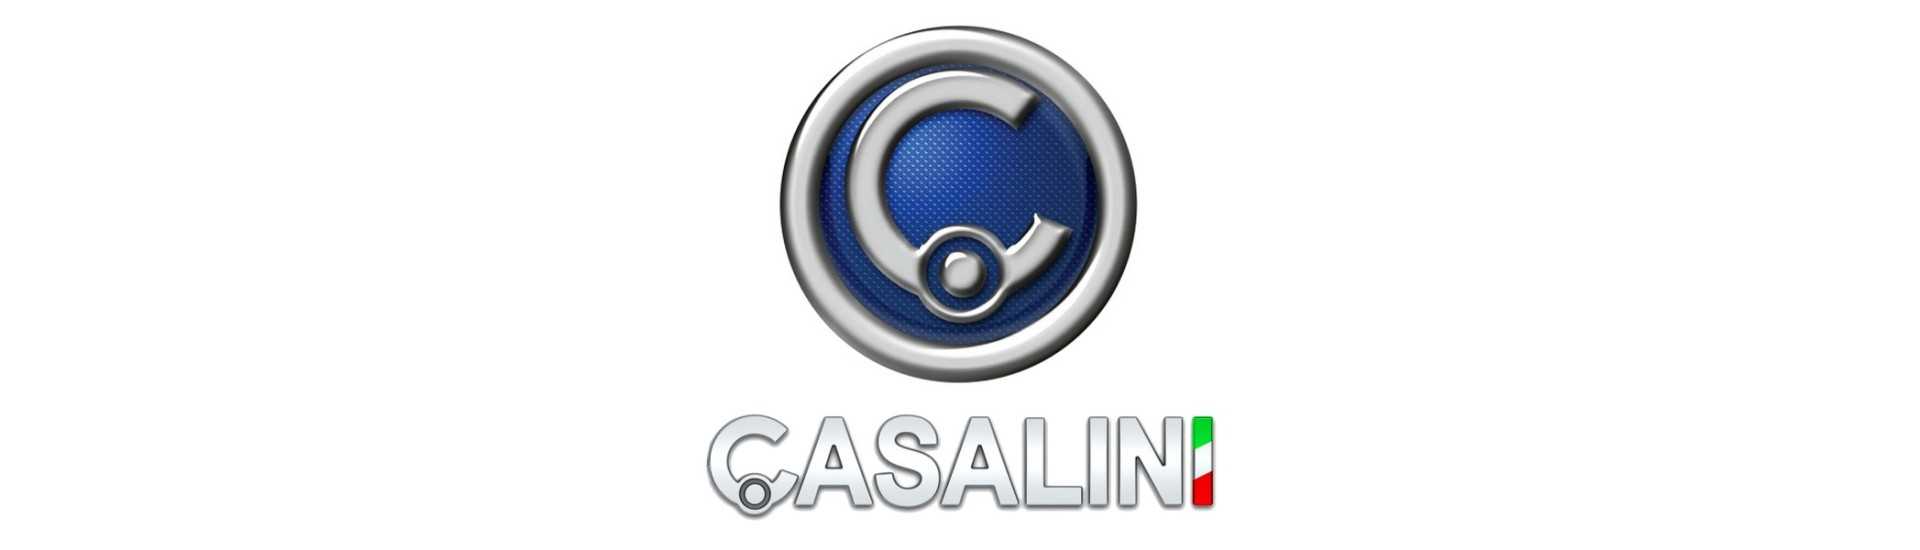 Tanque al mejor precio para coche sin permiso Casalini